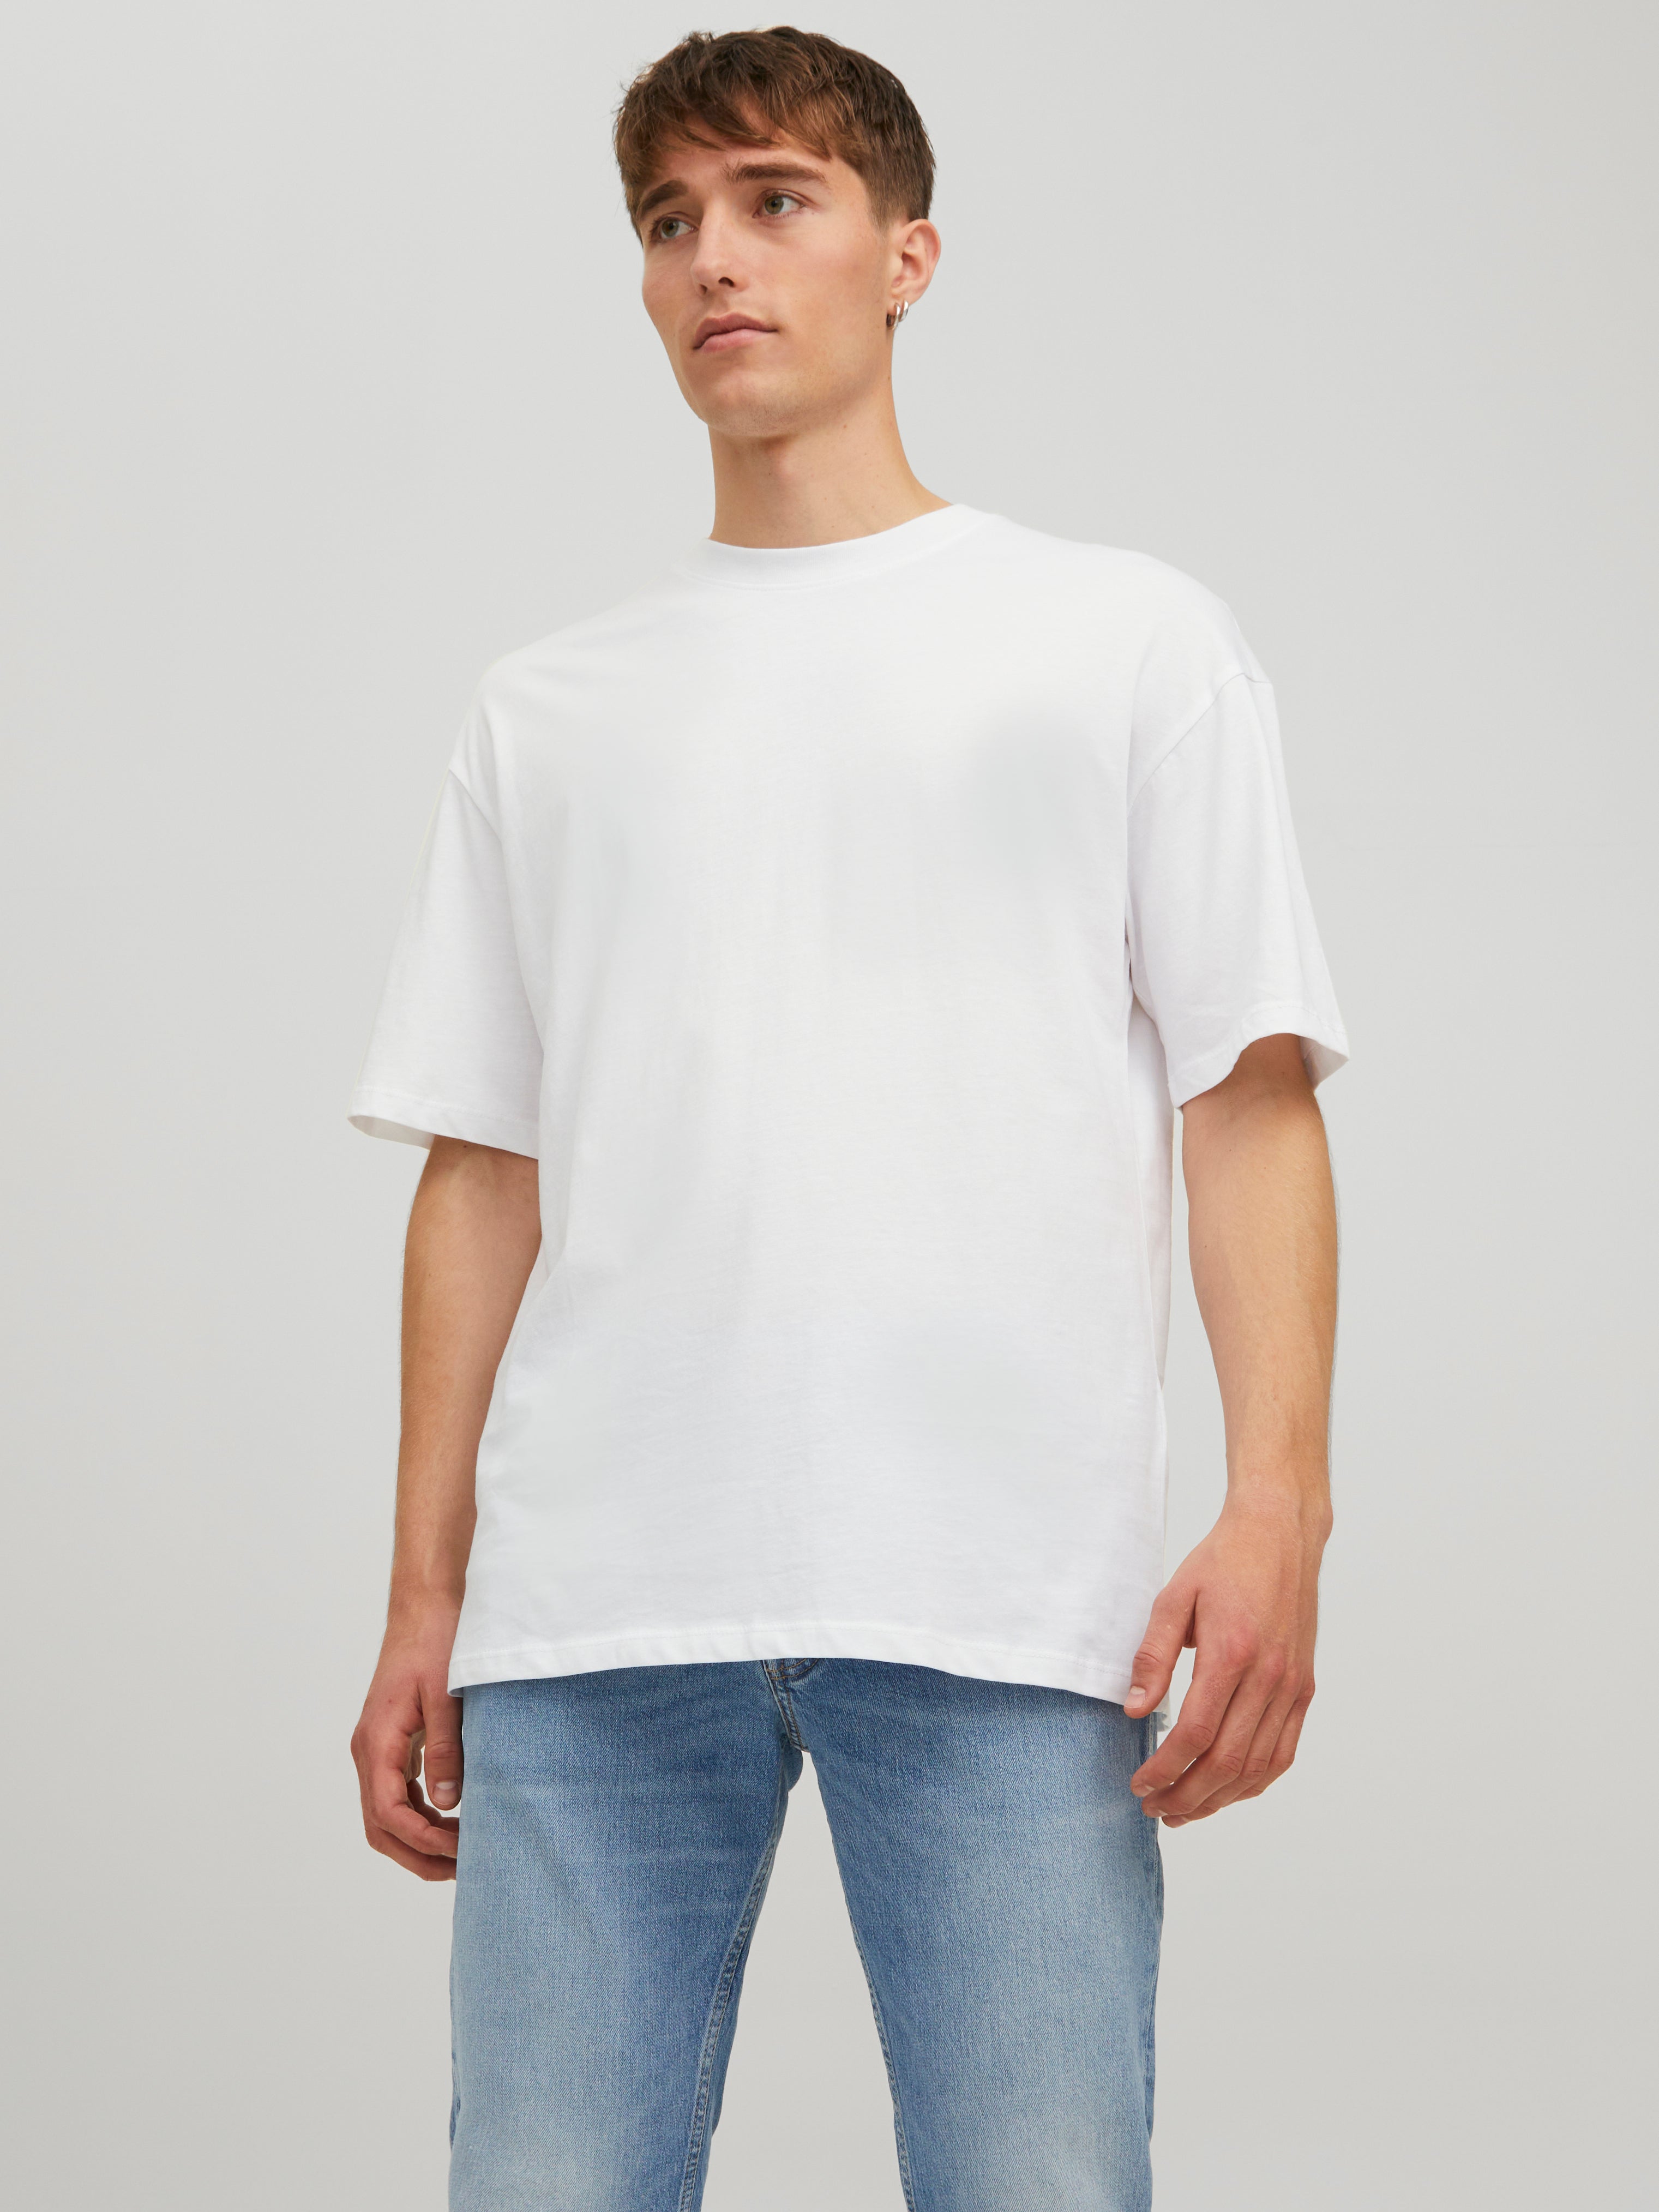 Grün M DAMEN Hemden & T-Shirts Falten Zara Bluse Rabatt 71 % 